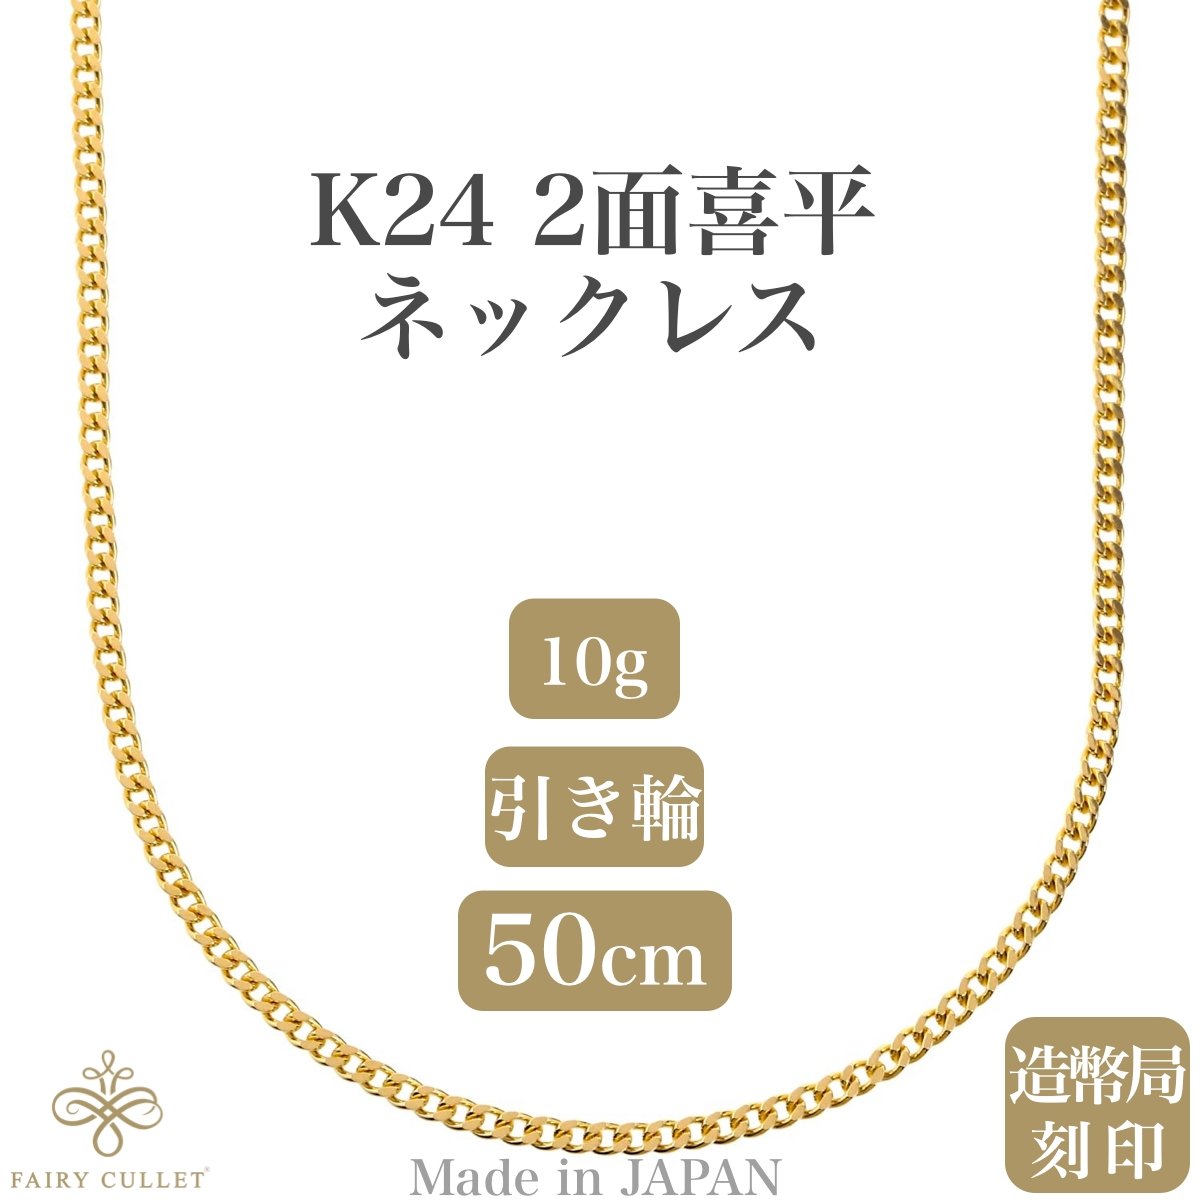 24金ネックレス K24 2面喜平チェーン 日本製 検定印 10g 50cm 引き輪 - 喜平ジュエリーの専門店 FAIRY CULLET(フェアリーカレット)